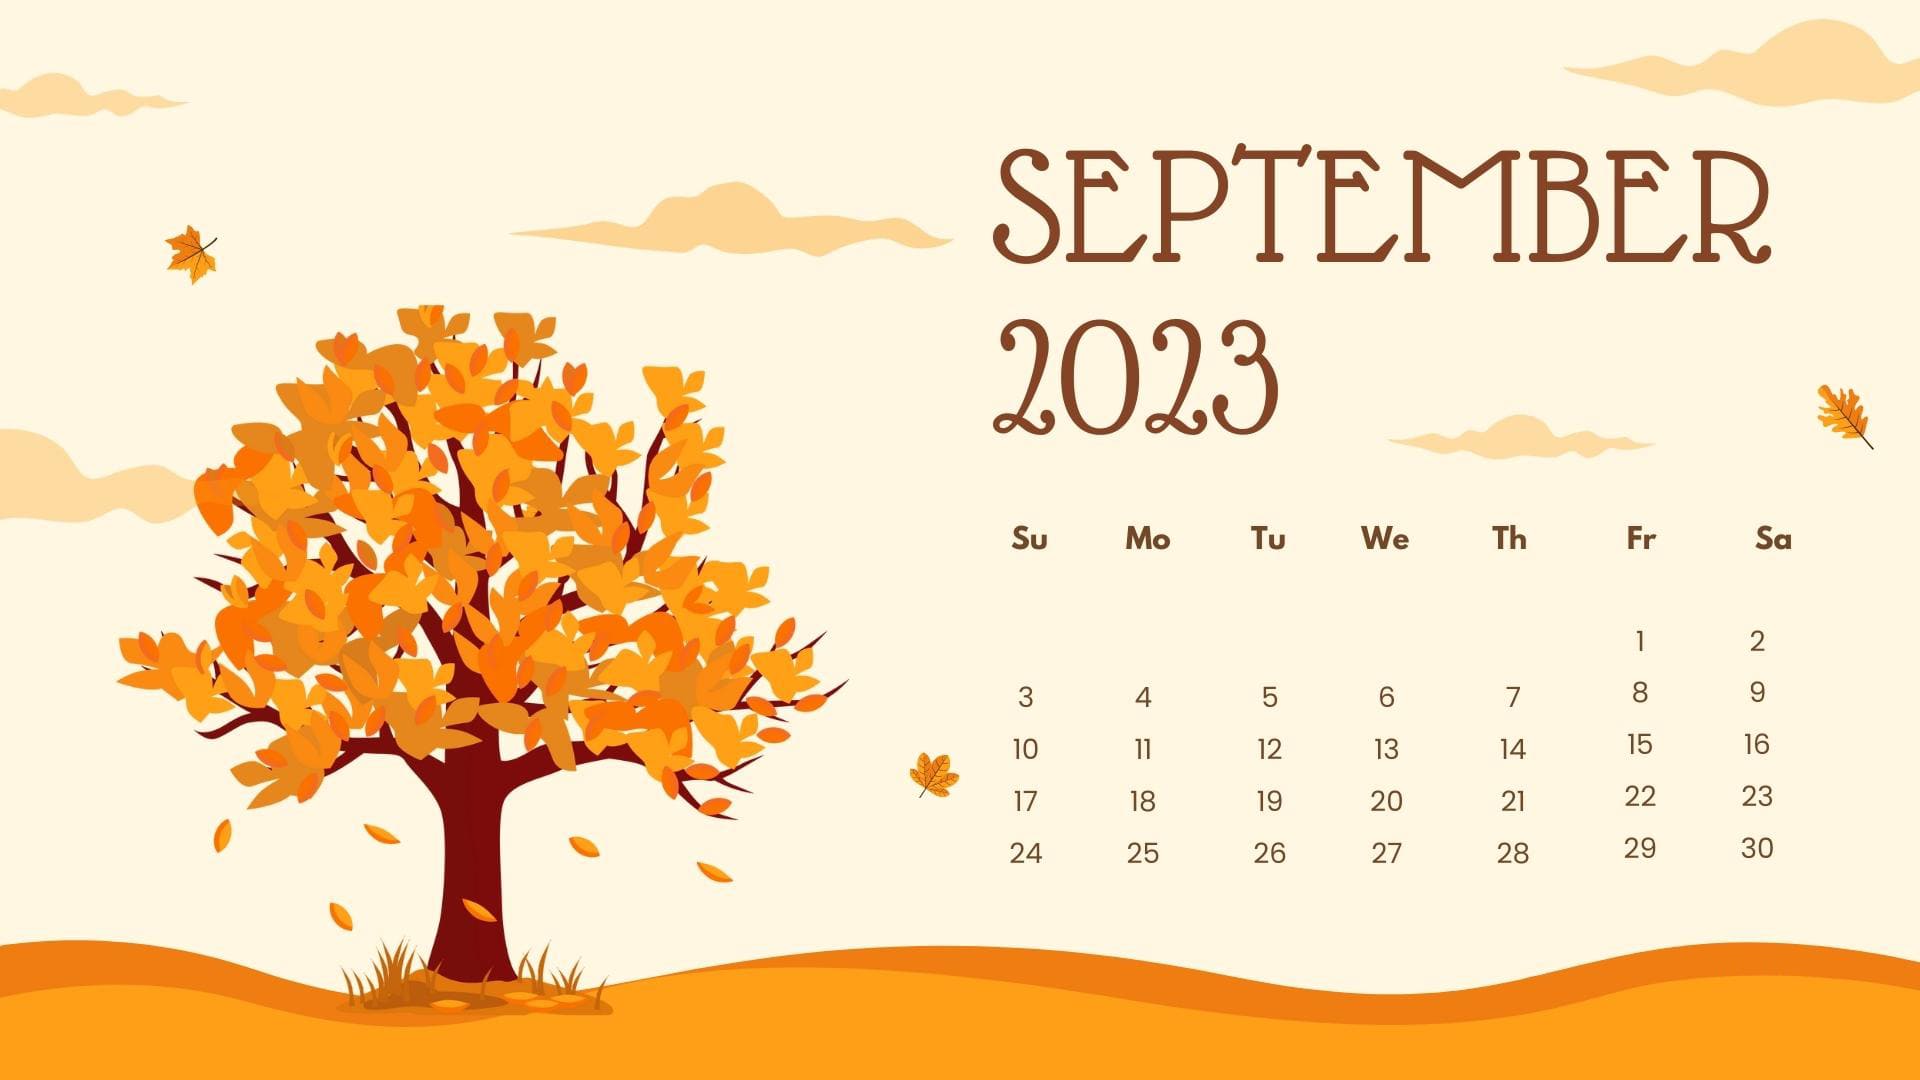 2023 Schedule Wallpapers